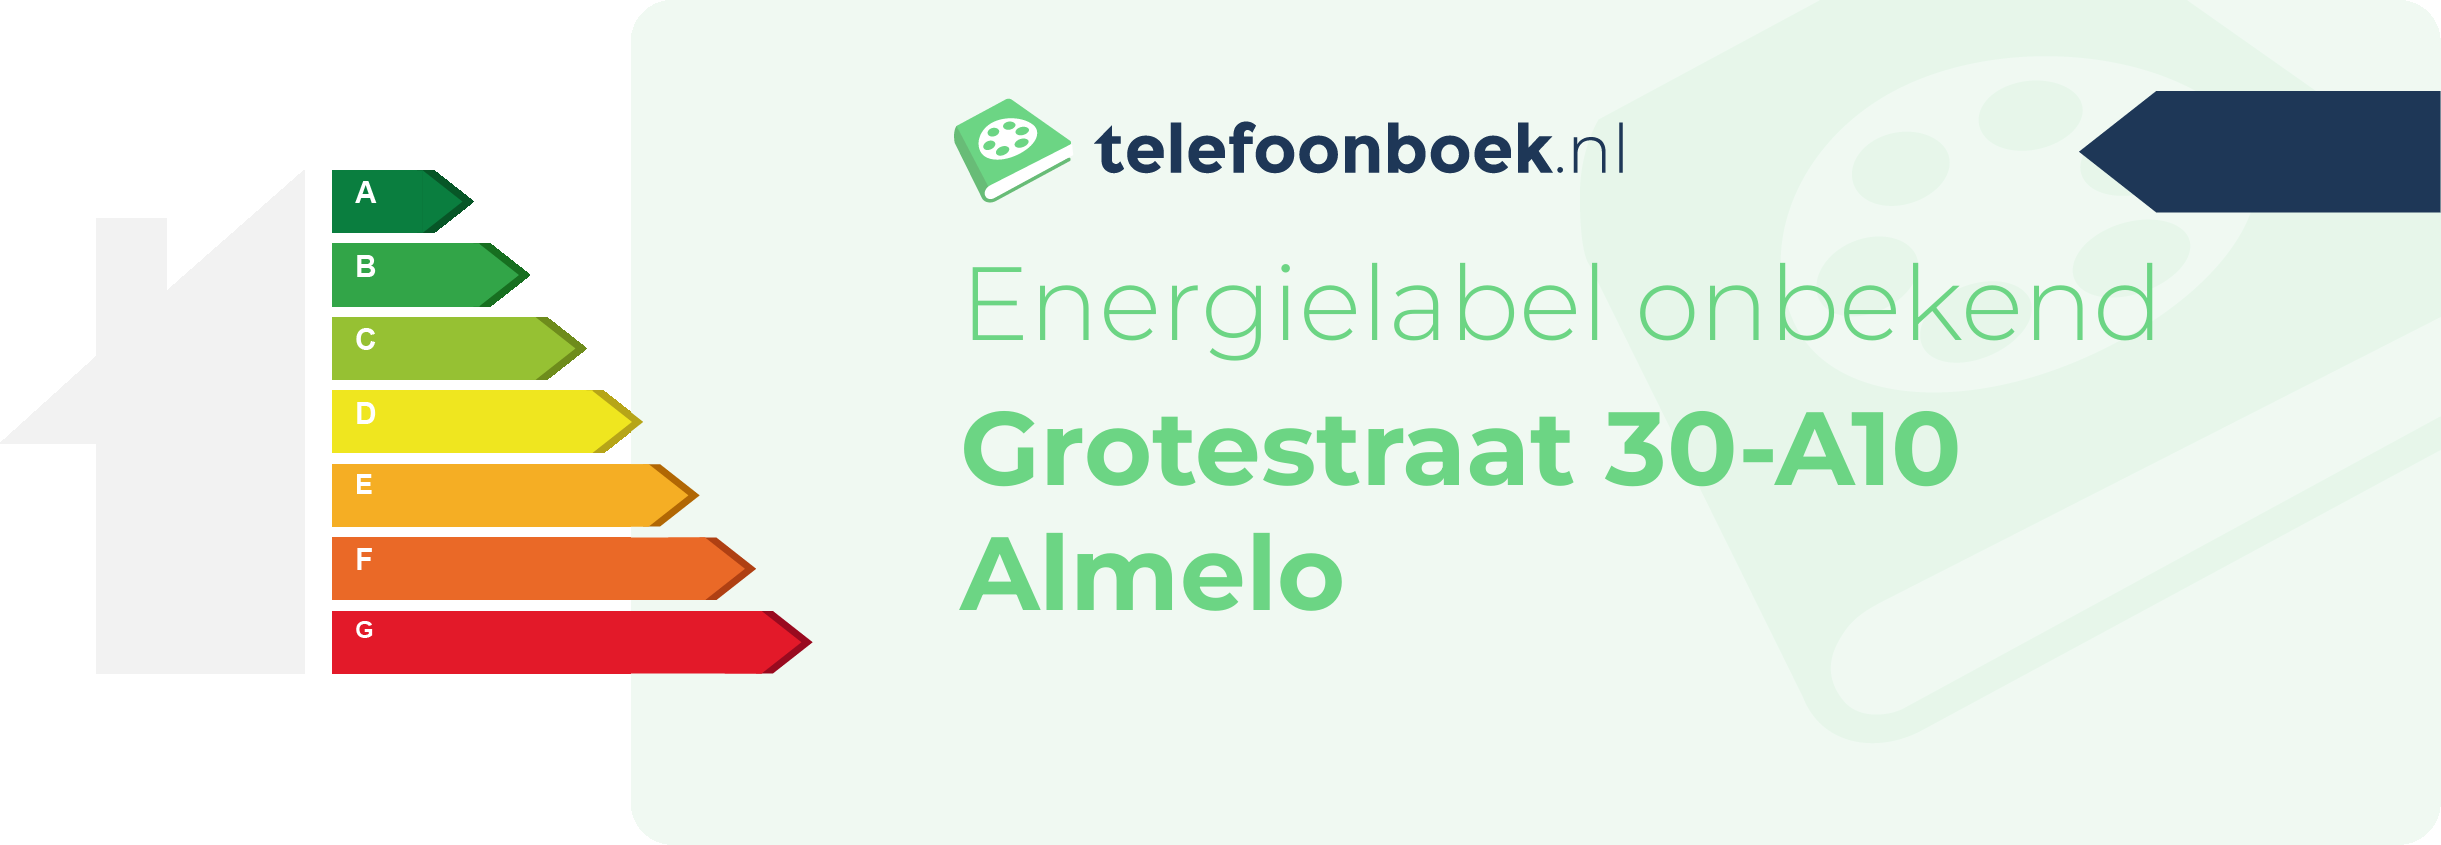 Energielabel Grotestraat 30-A10 Almelo